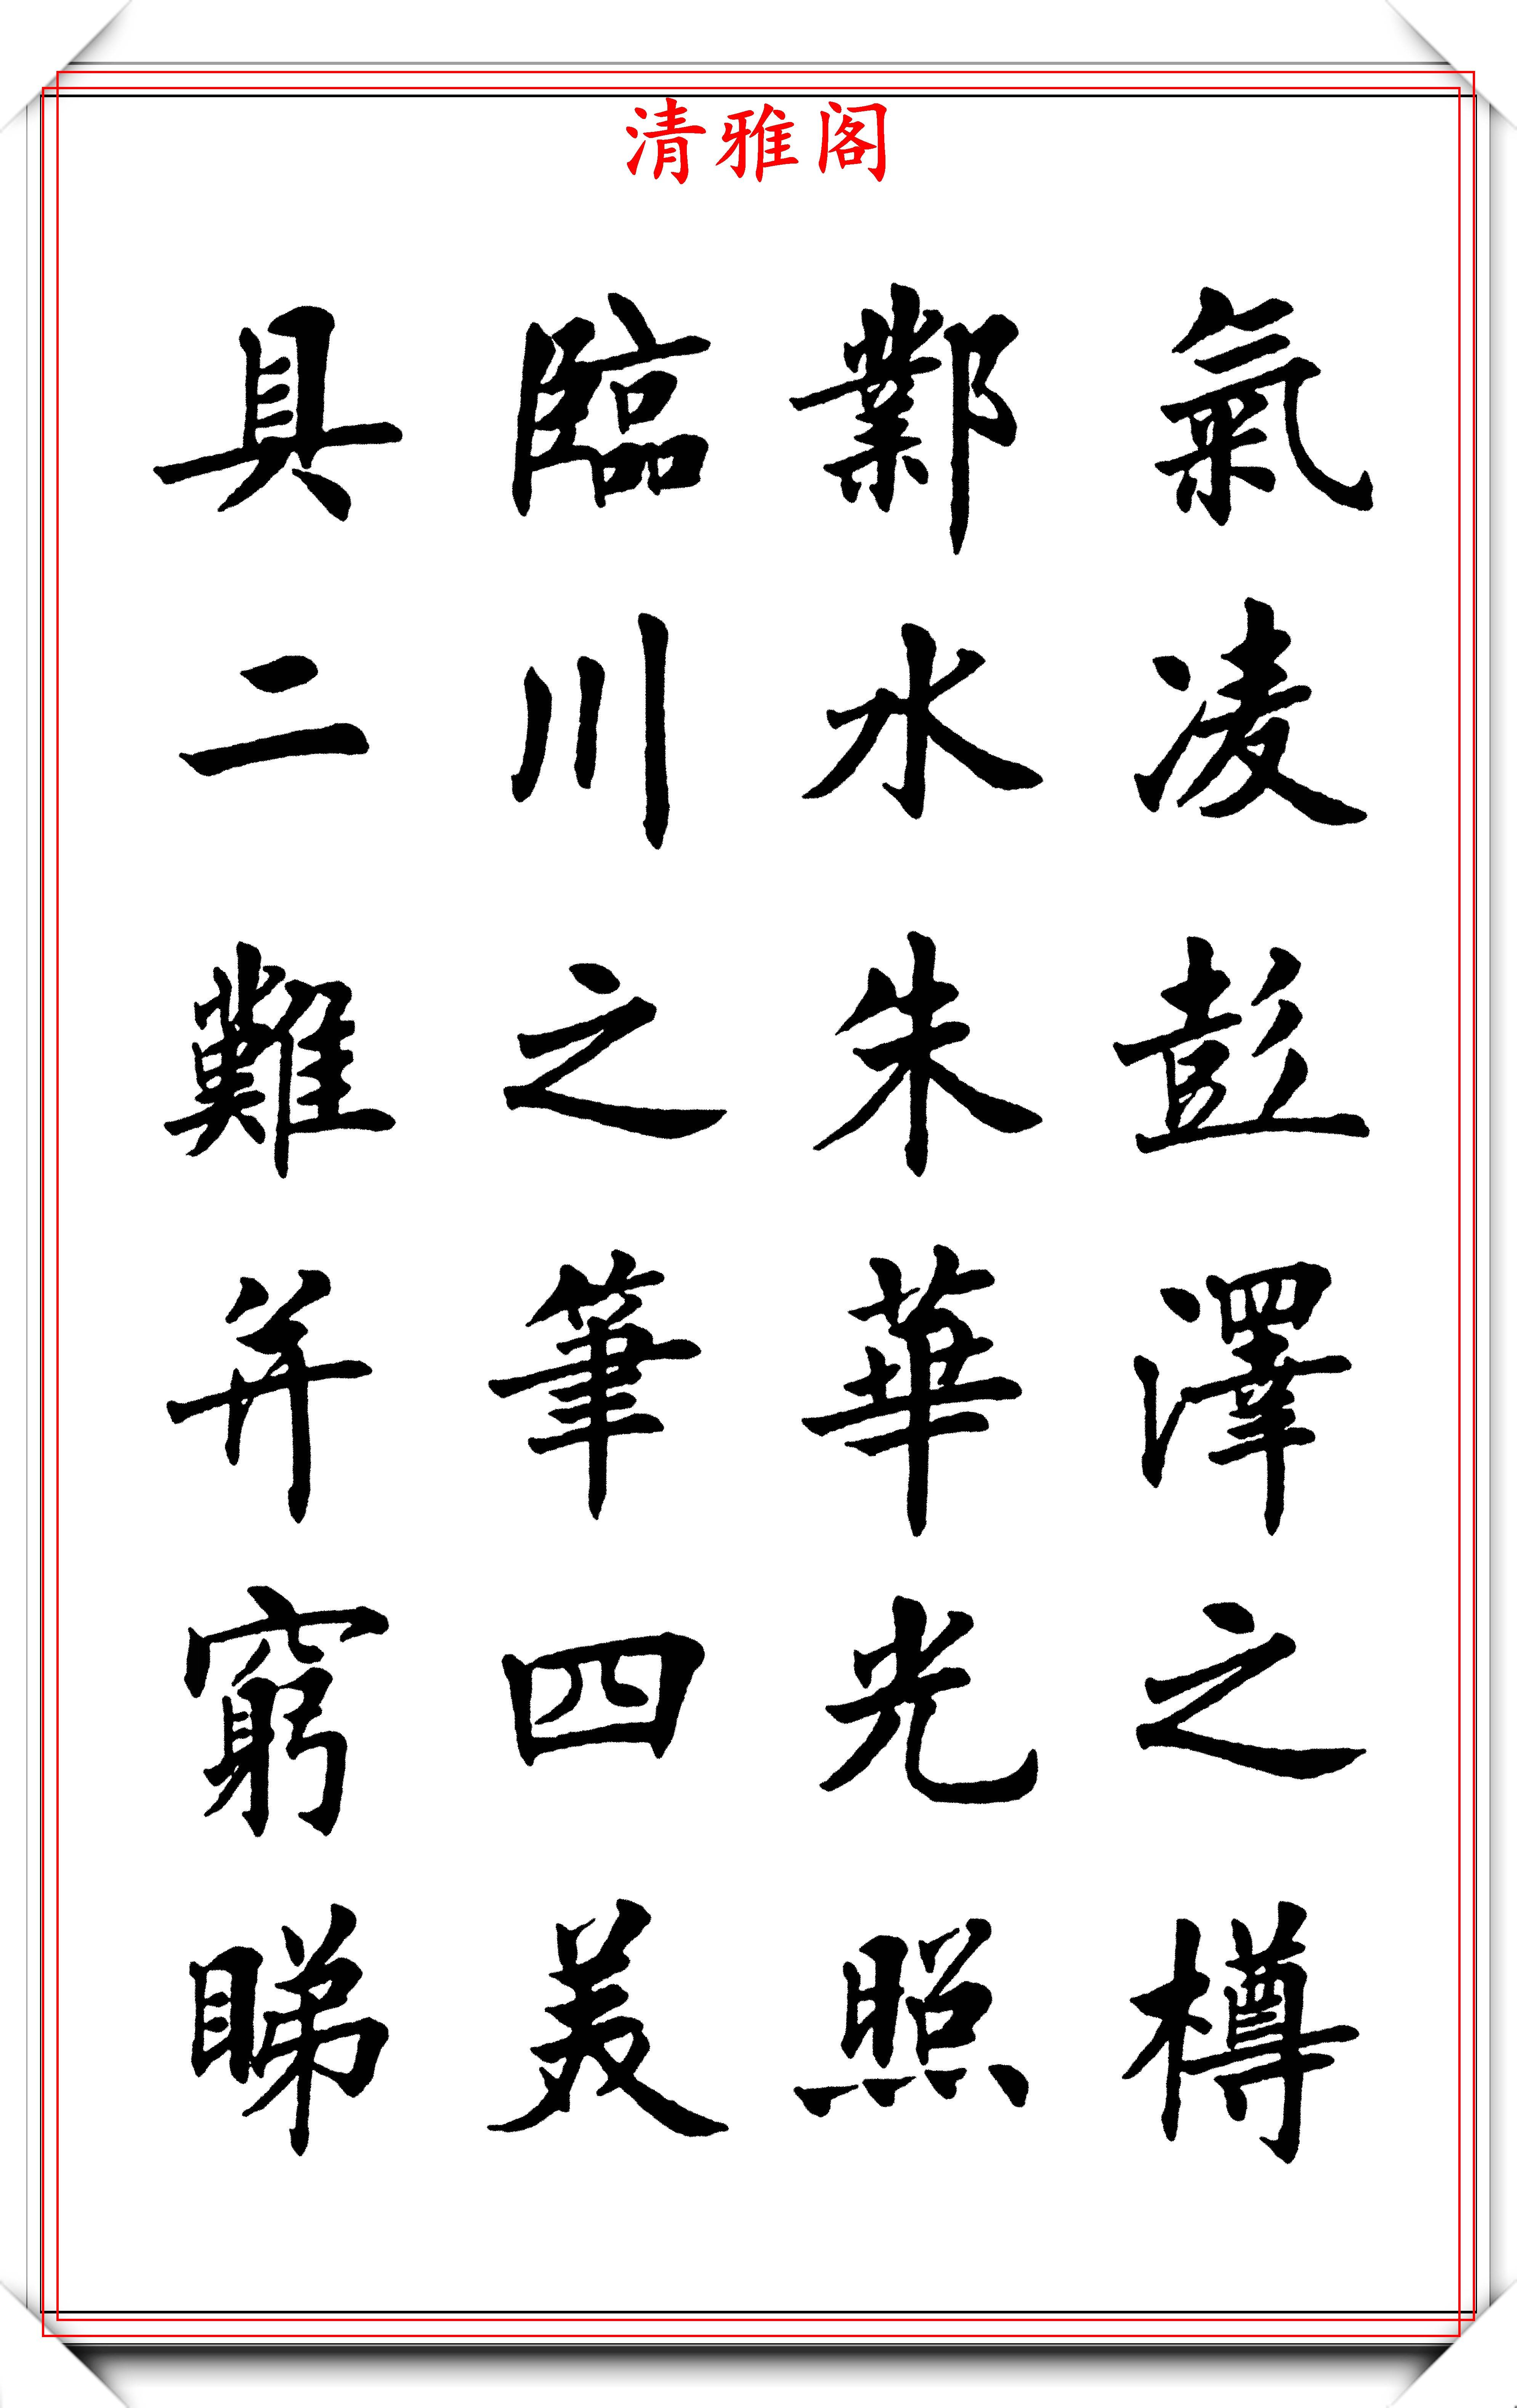 现代书法名流刘小晴,楷书《滕王阁》欣赏,学新体楷书的优质字帖